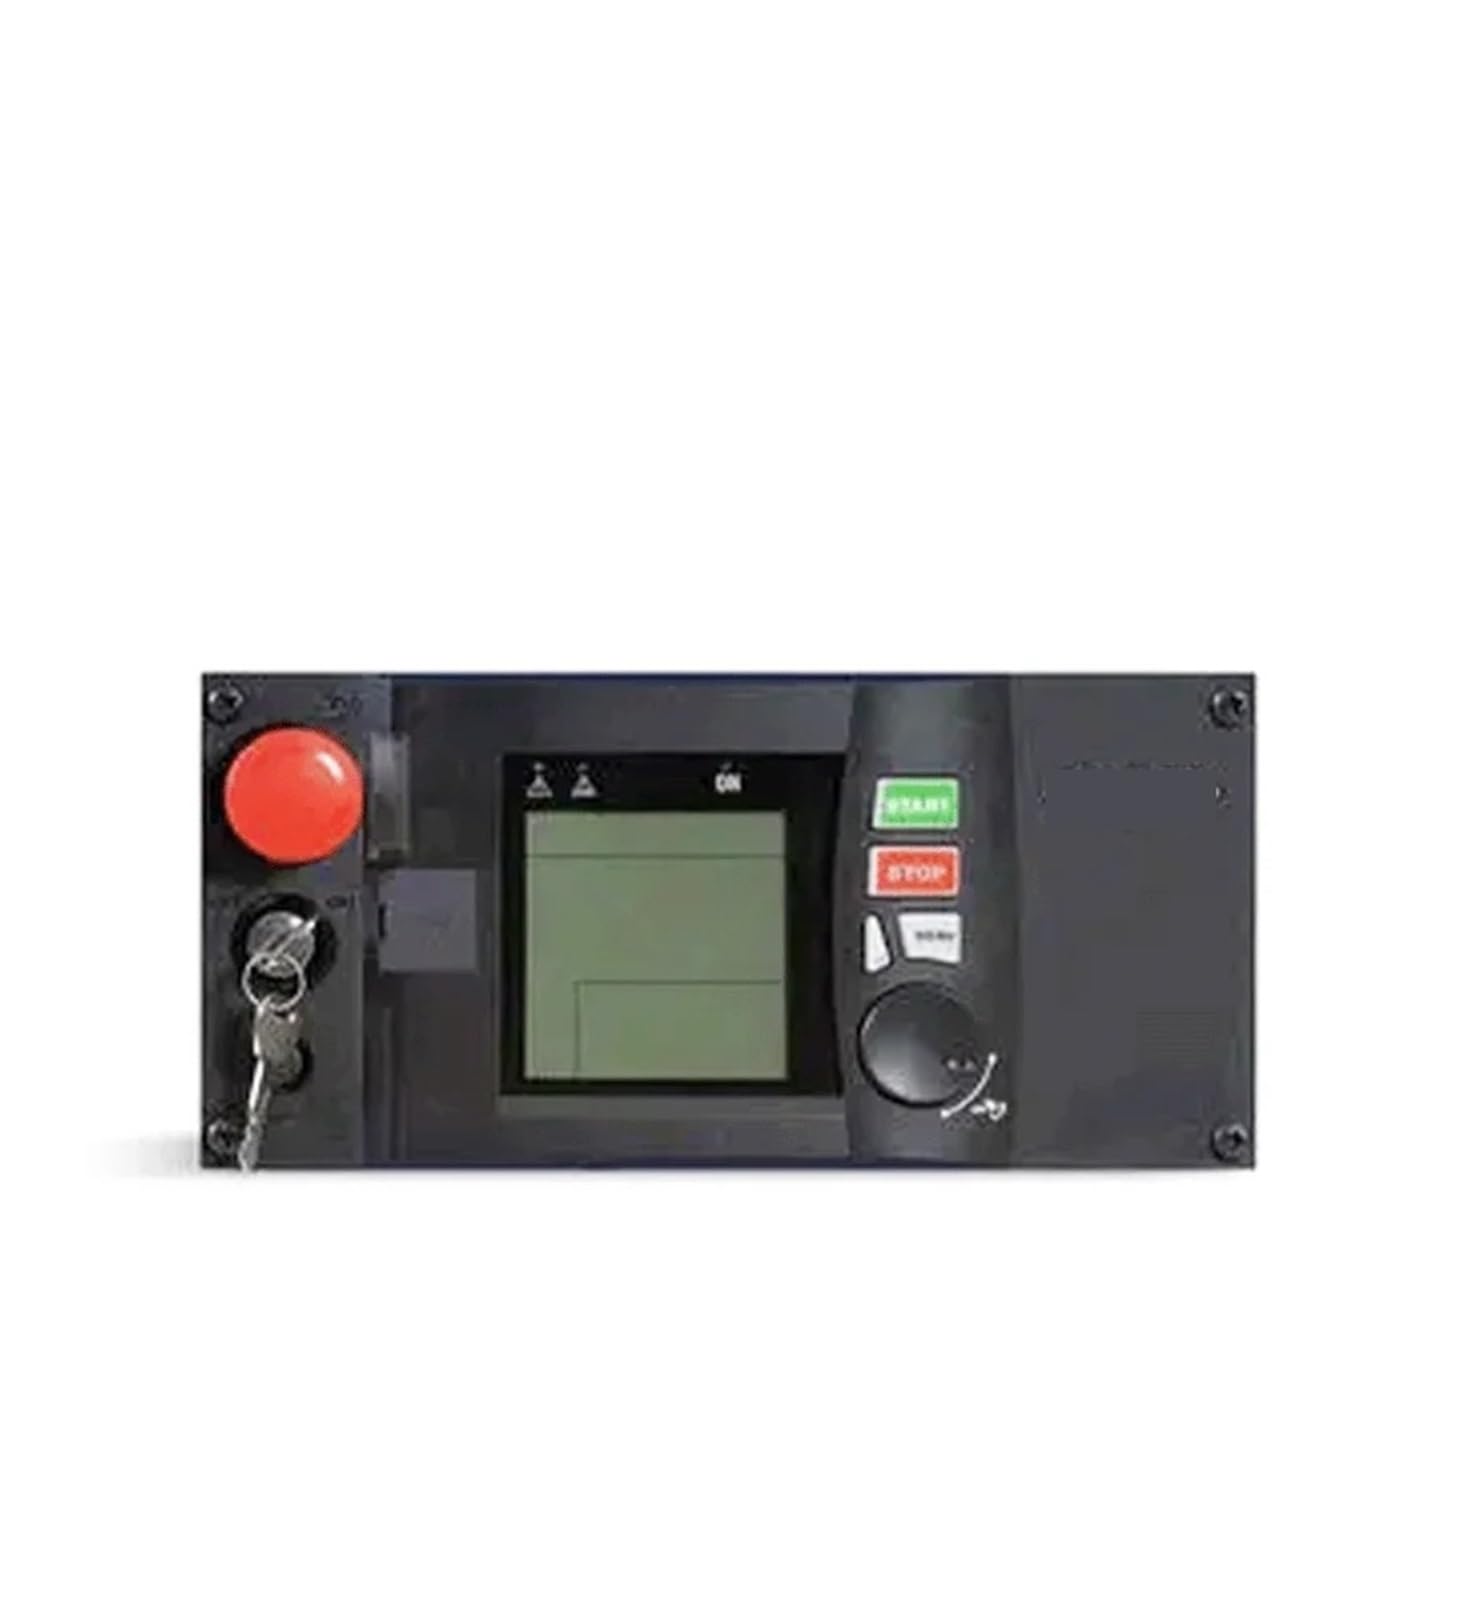 Generator Controller DEC4000/DEC1000/APM303/APM802 BEDIENFELD Bedienfelder for Generatoren von PKHDLYEU